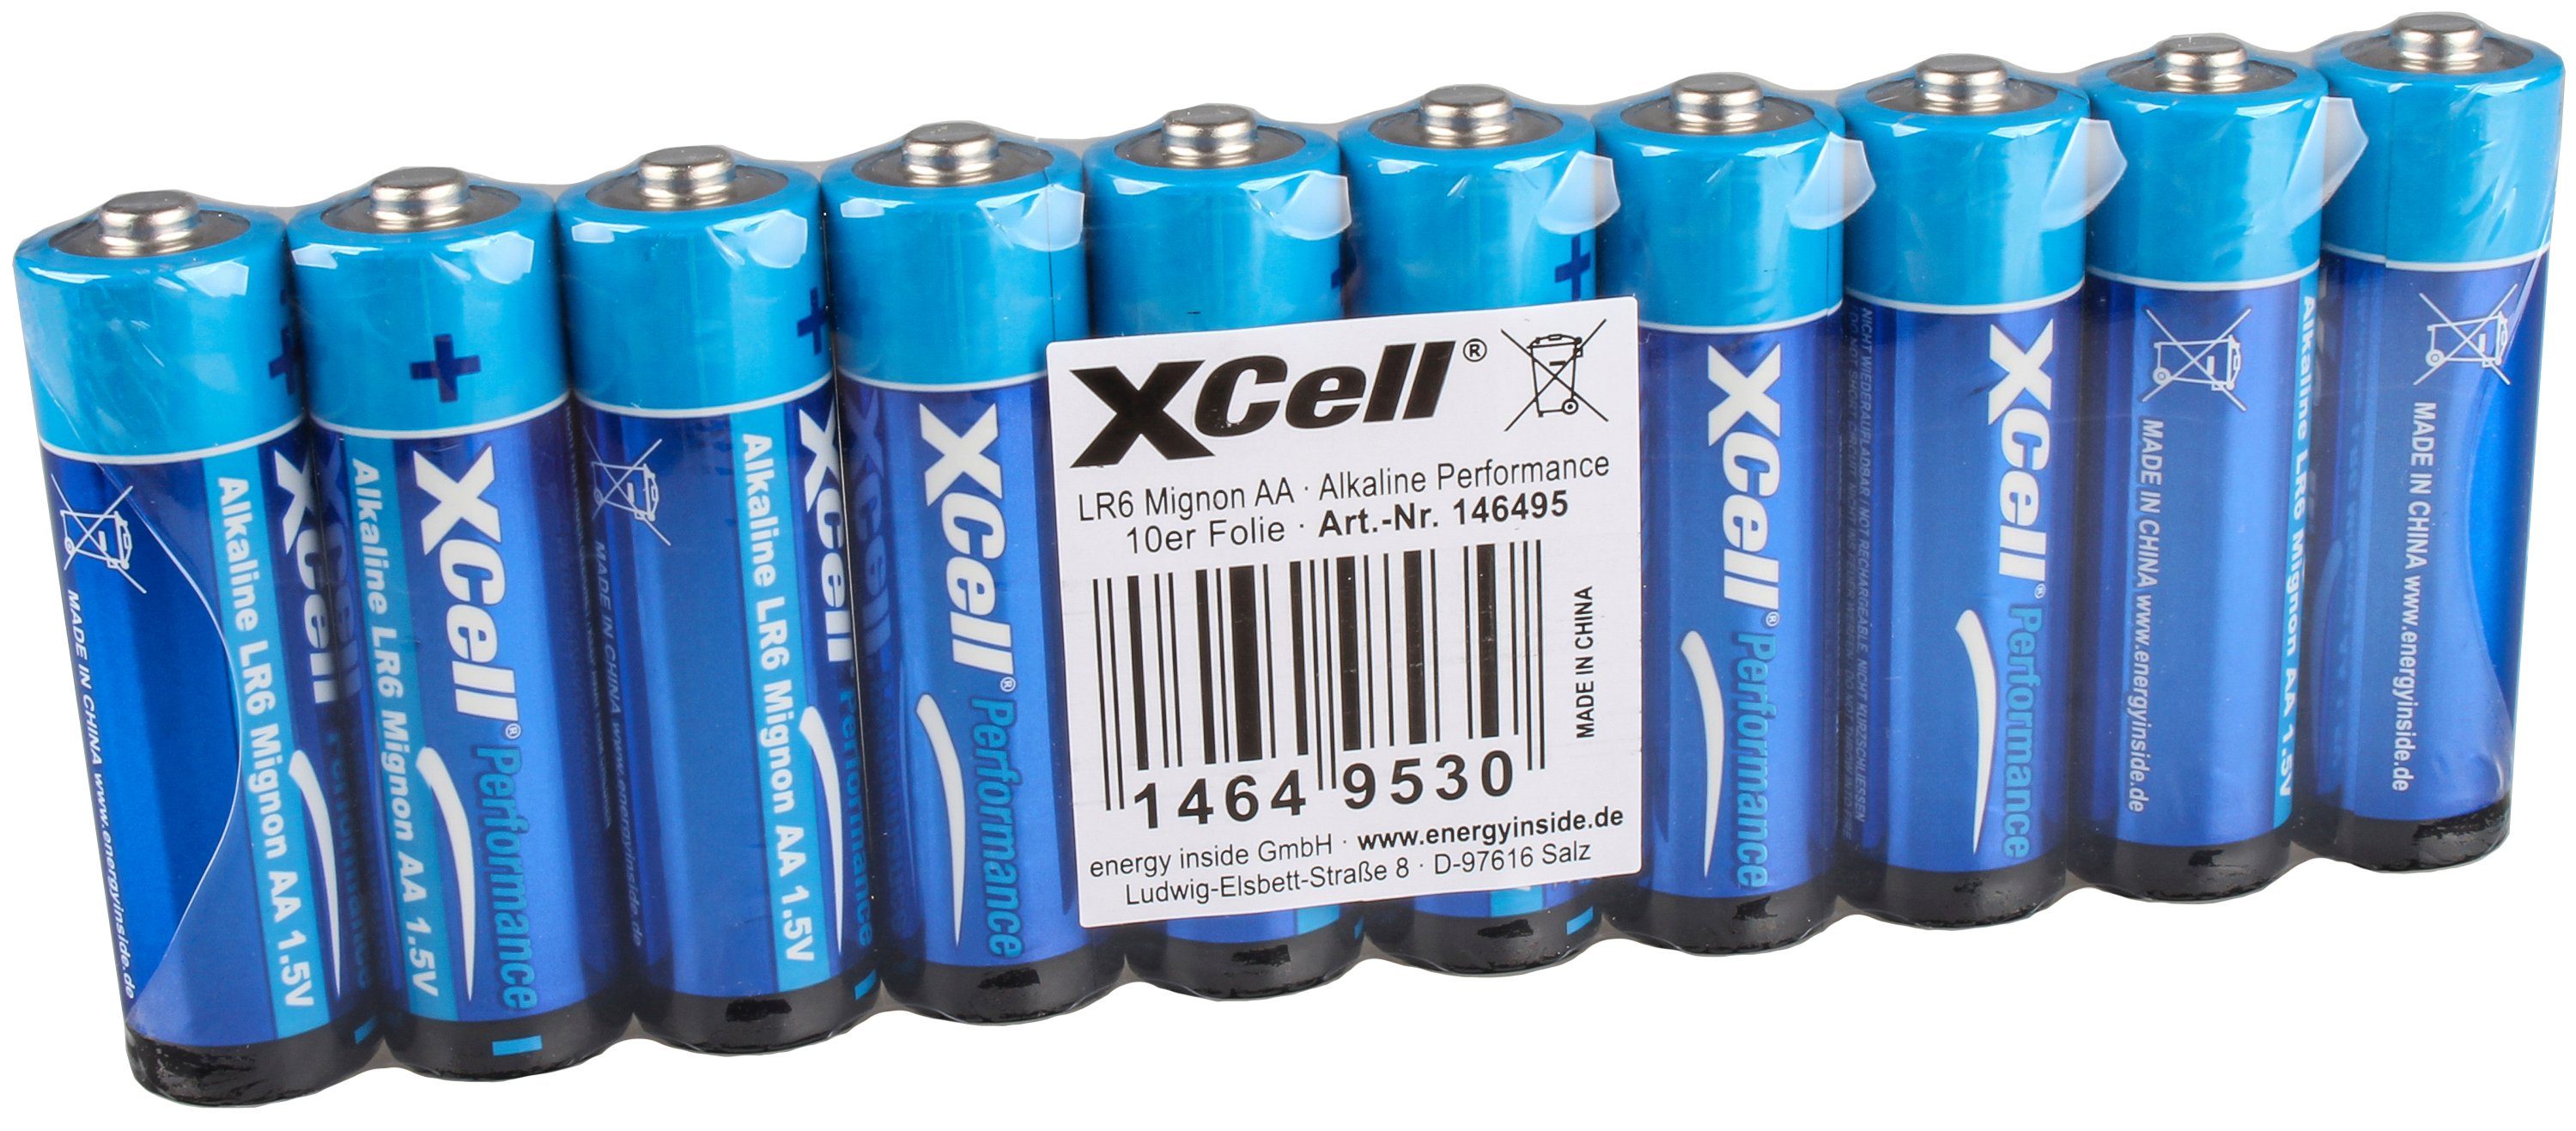 XCell Xcell Batterie Alkaline 1,5V Akku Mignon 100er Karton